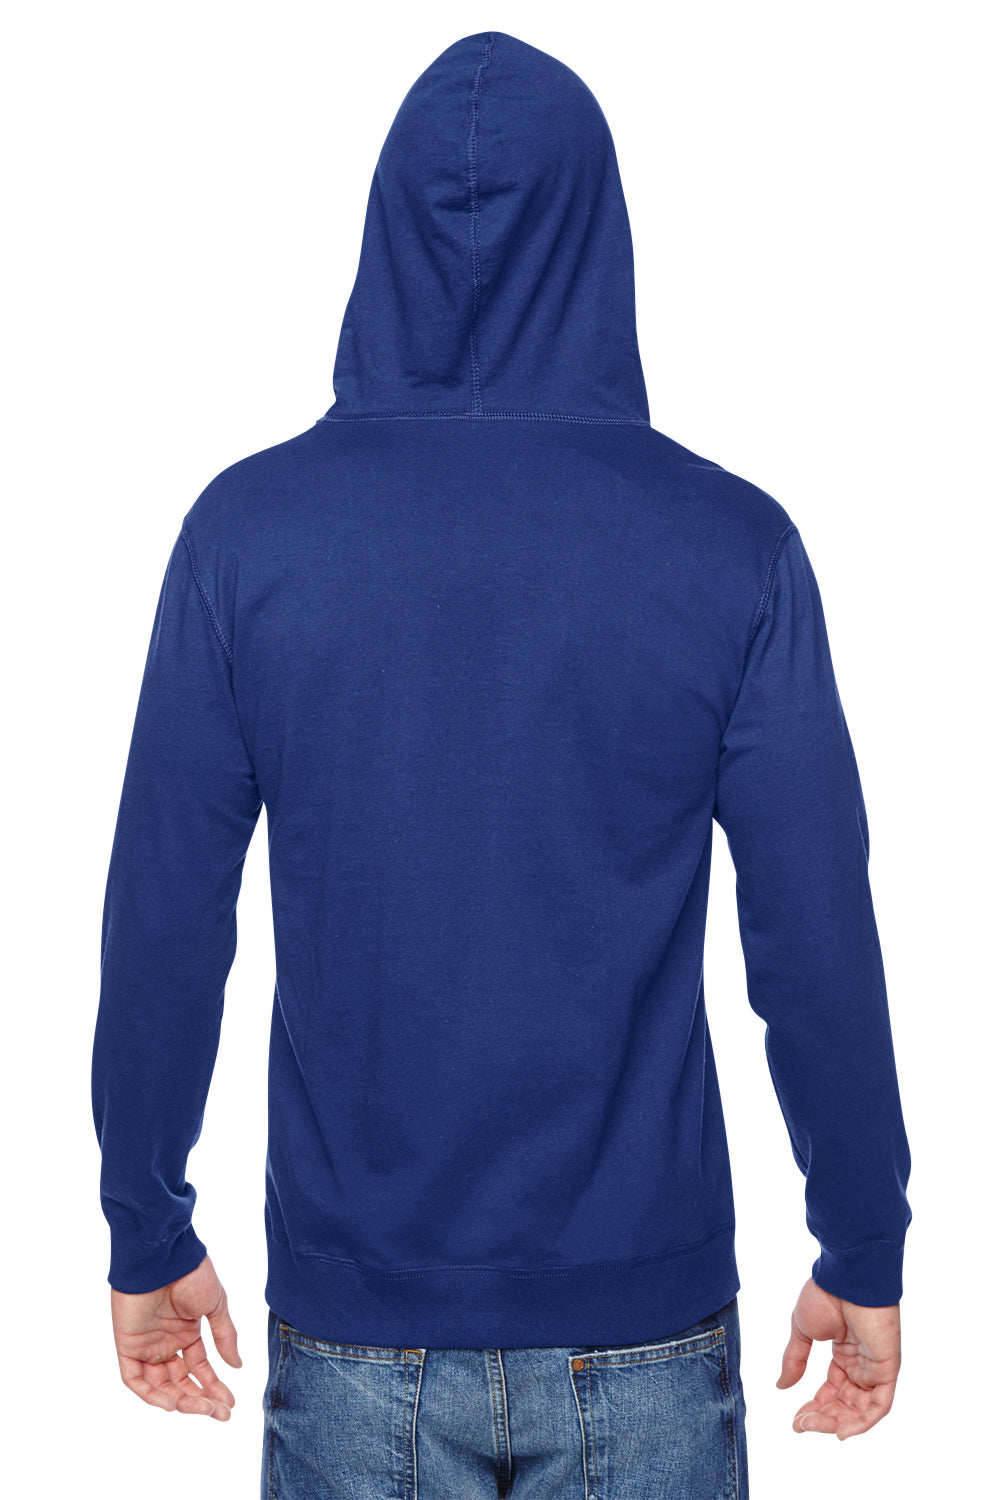 Fruit Of The Loom SF60R Mens Sofspun Full Zip Hooded Sweatshirt Hoodie Royal Blue Back